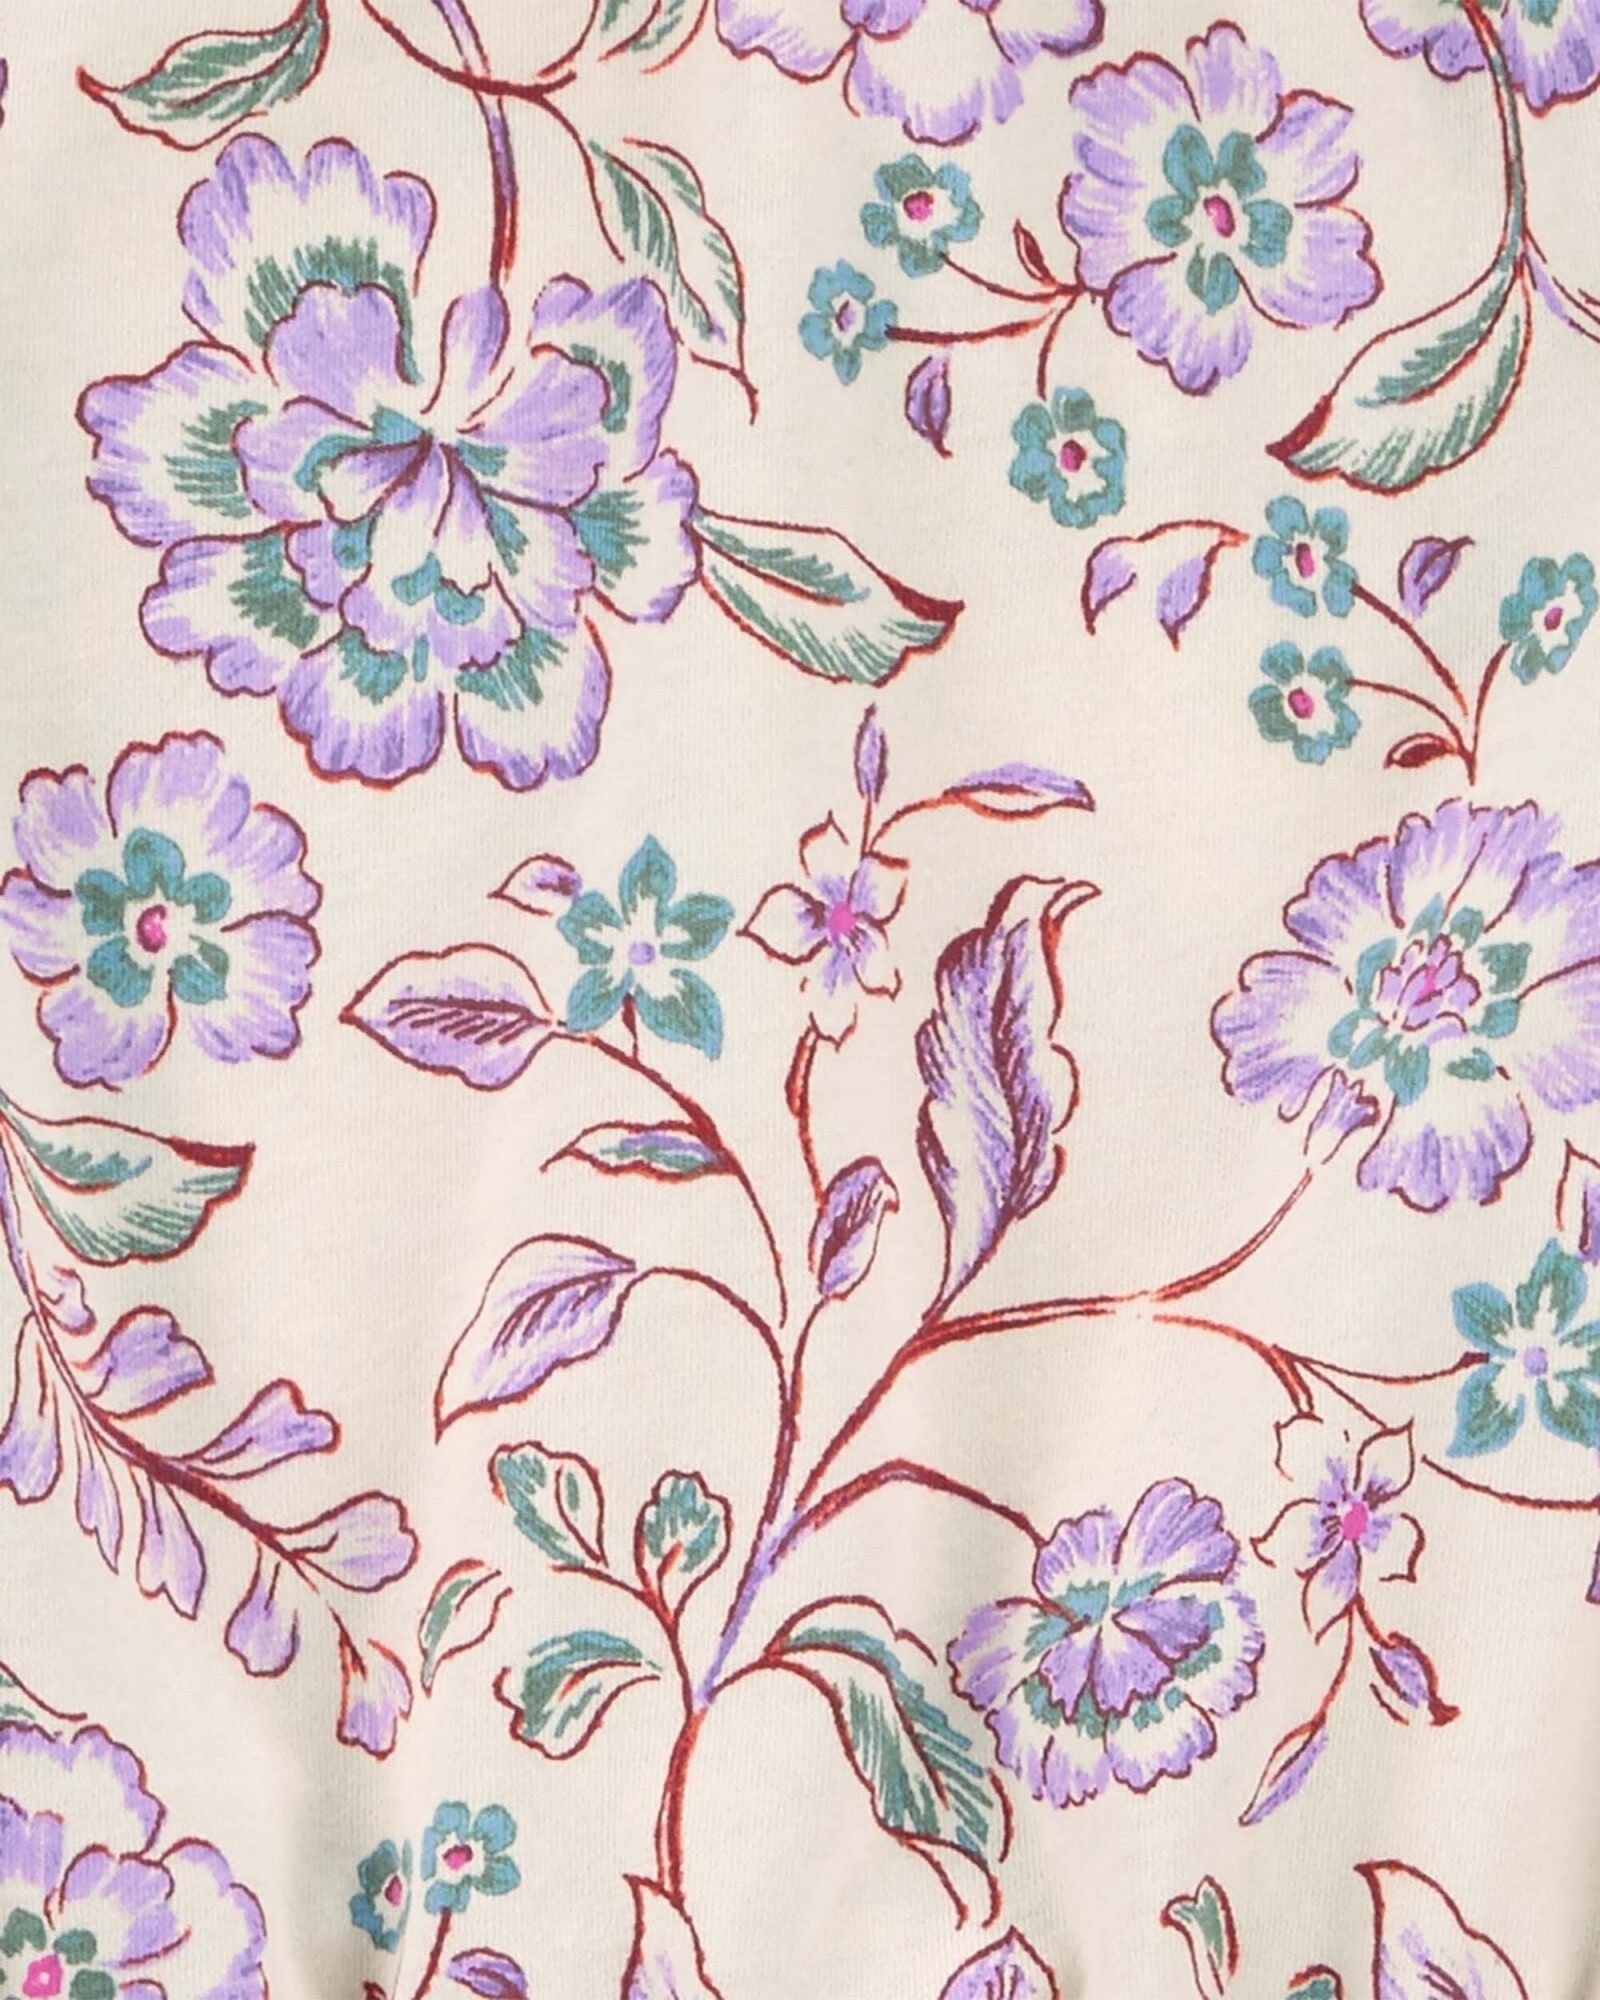 Blusa de algodón, con fruncido, diseño floral Sin color